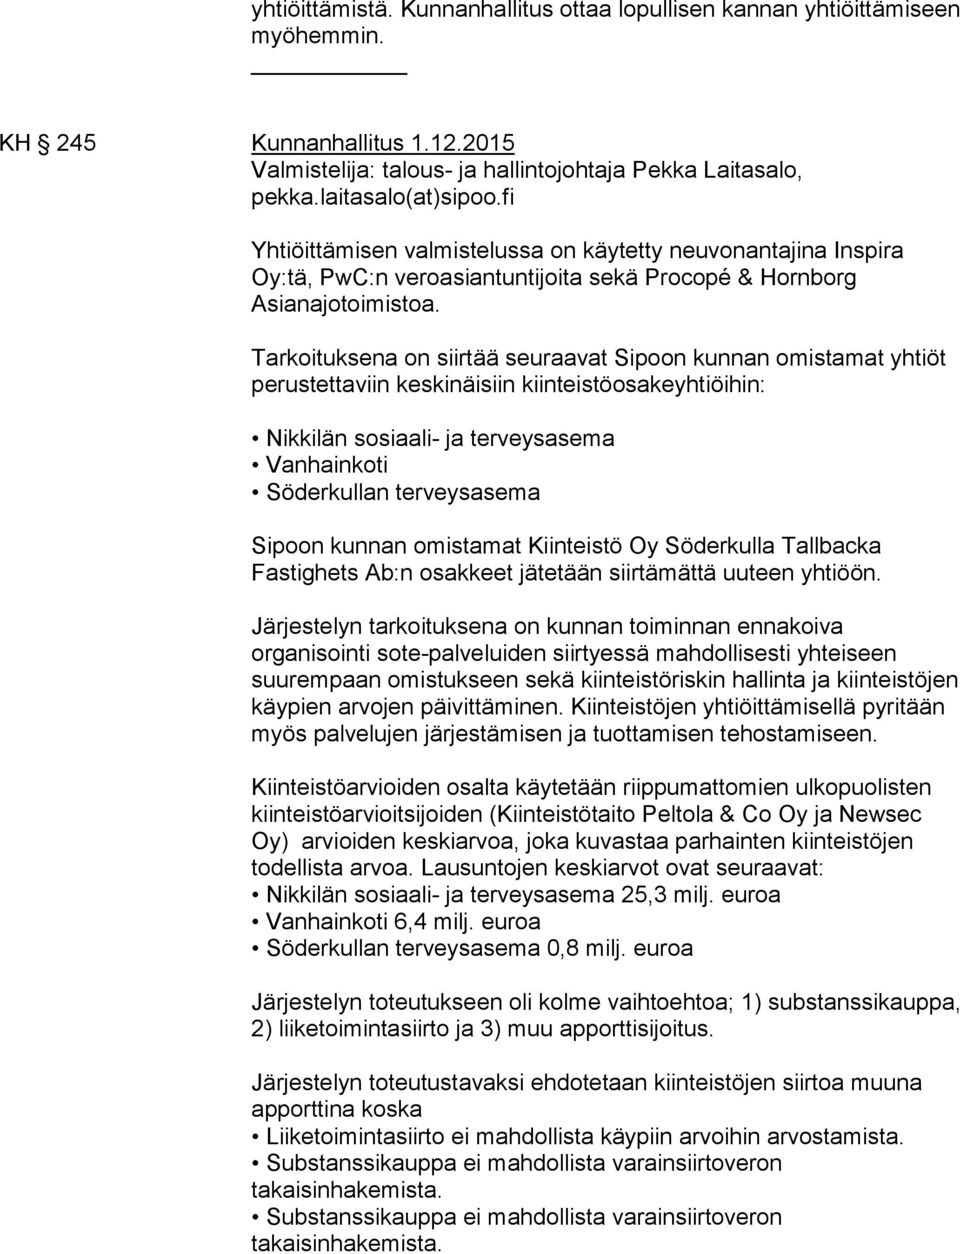 Tarkoituksena on siirtää seuraavat Sipoon kunnan omistamat yhtiöt perustettaviin keskinäisiin kiinteistöosakeyhtiöihin: Nikkilän sosiaali- ja terveysasema Vanhainkoti Söderkullan terveysasema Sipoon